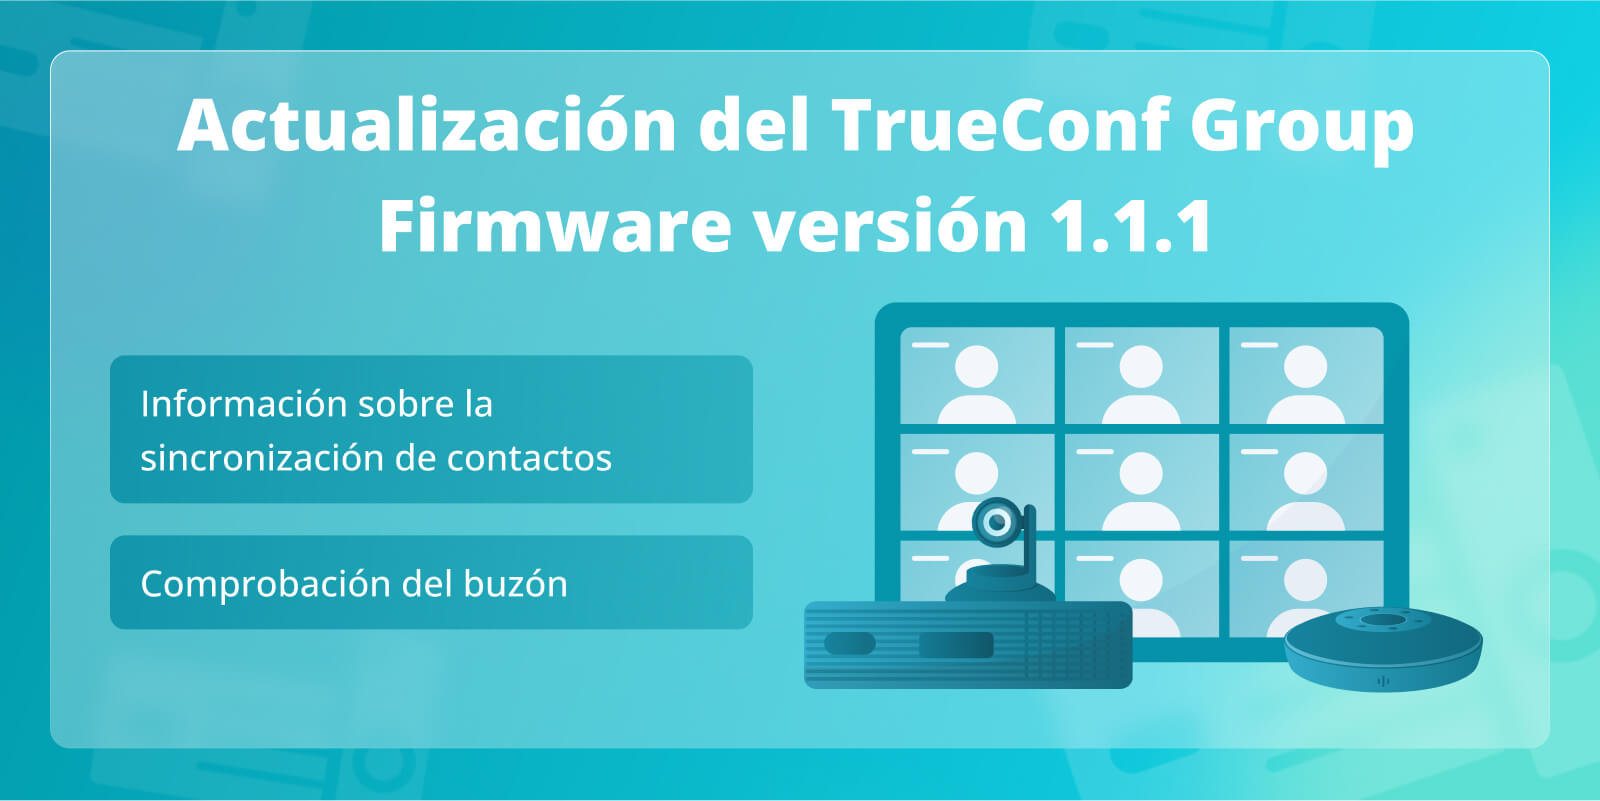 TrueConf Group 1.1.1: Comprobación del buzón e información sobre sincronización de contactos con el TrueConf Server y el TrueConf MCU 1